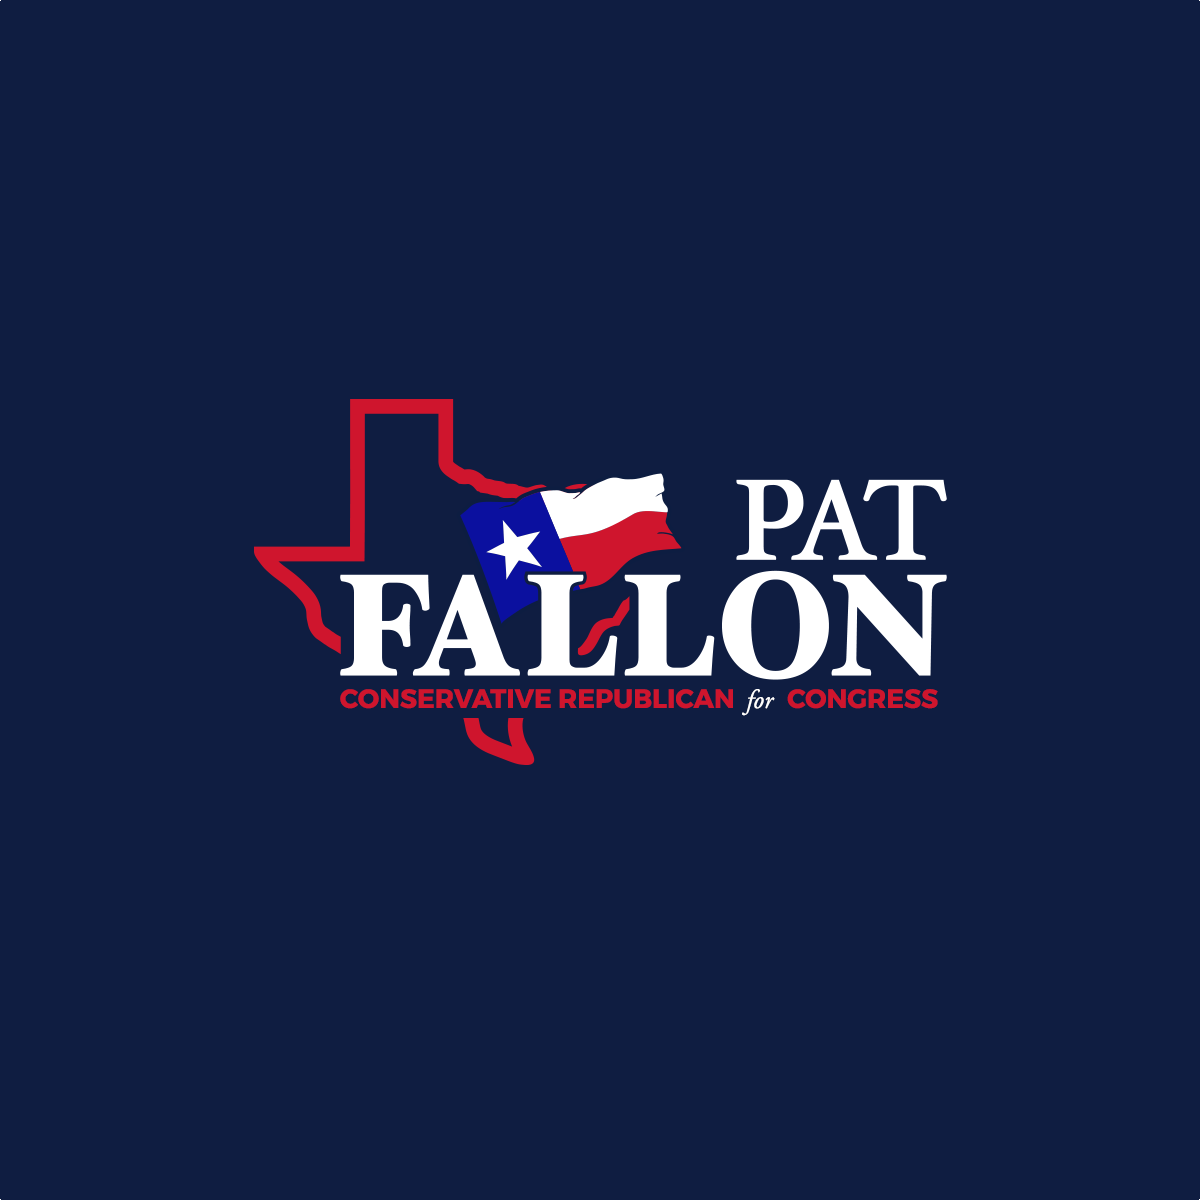 Conservative Republican Pat Fallon for Congress